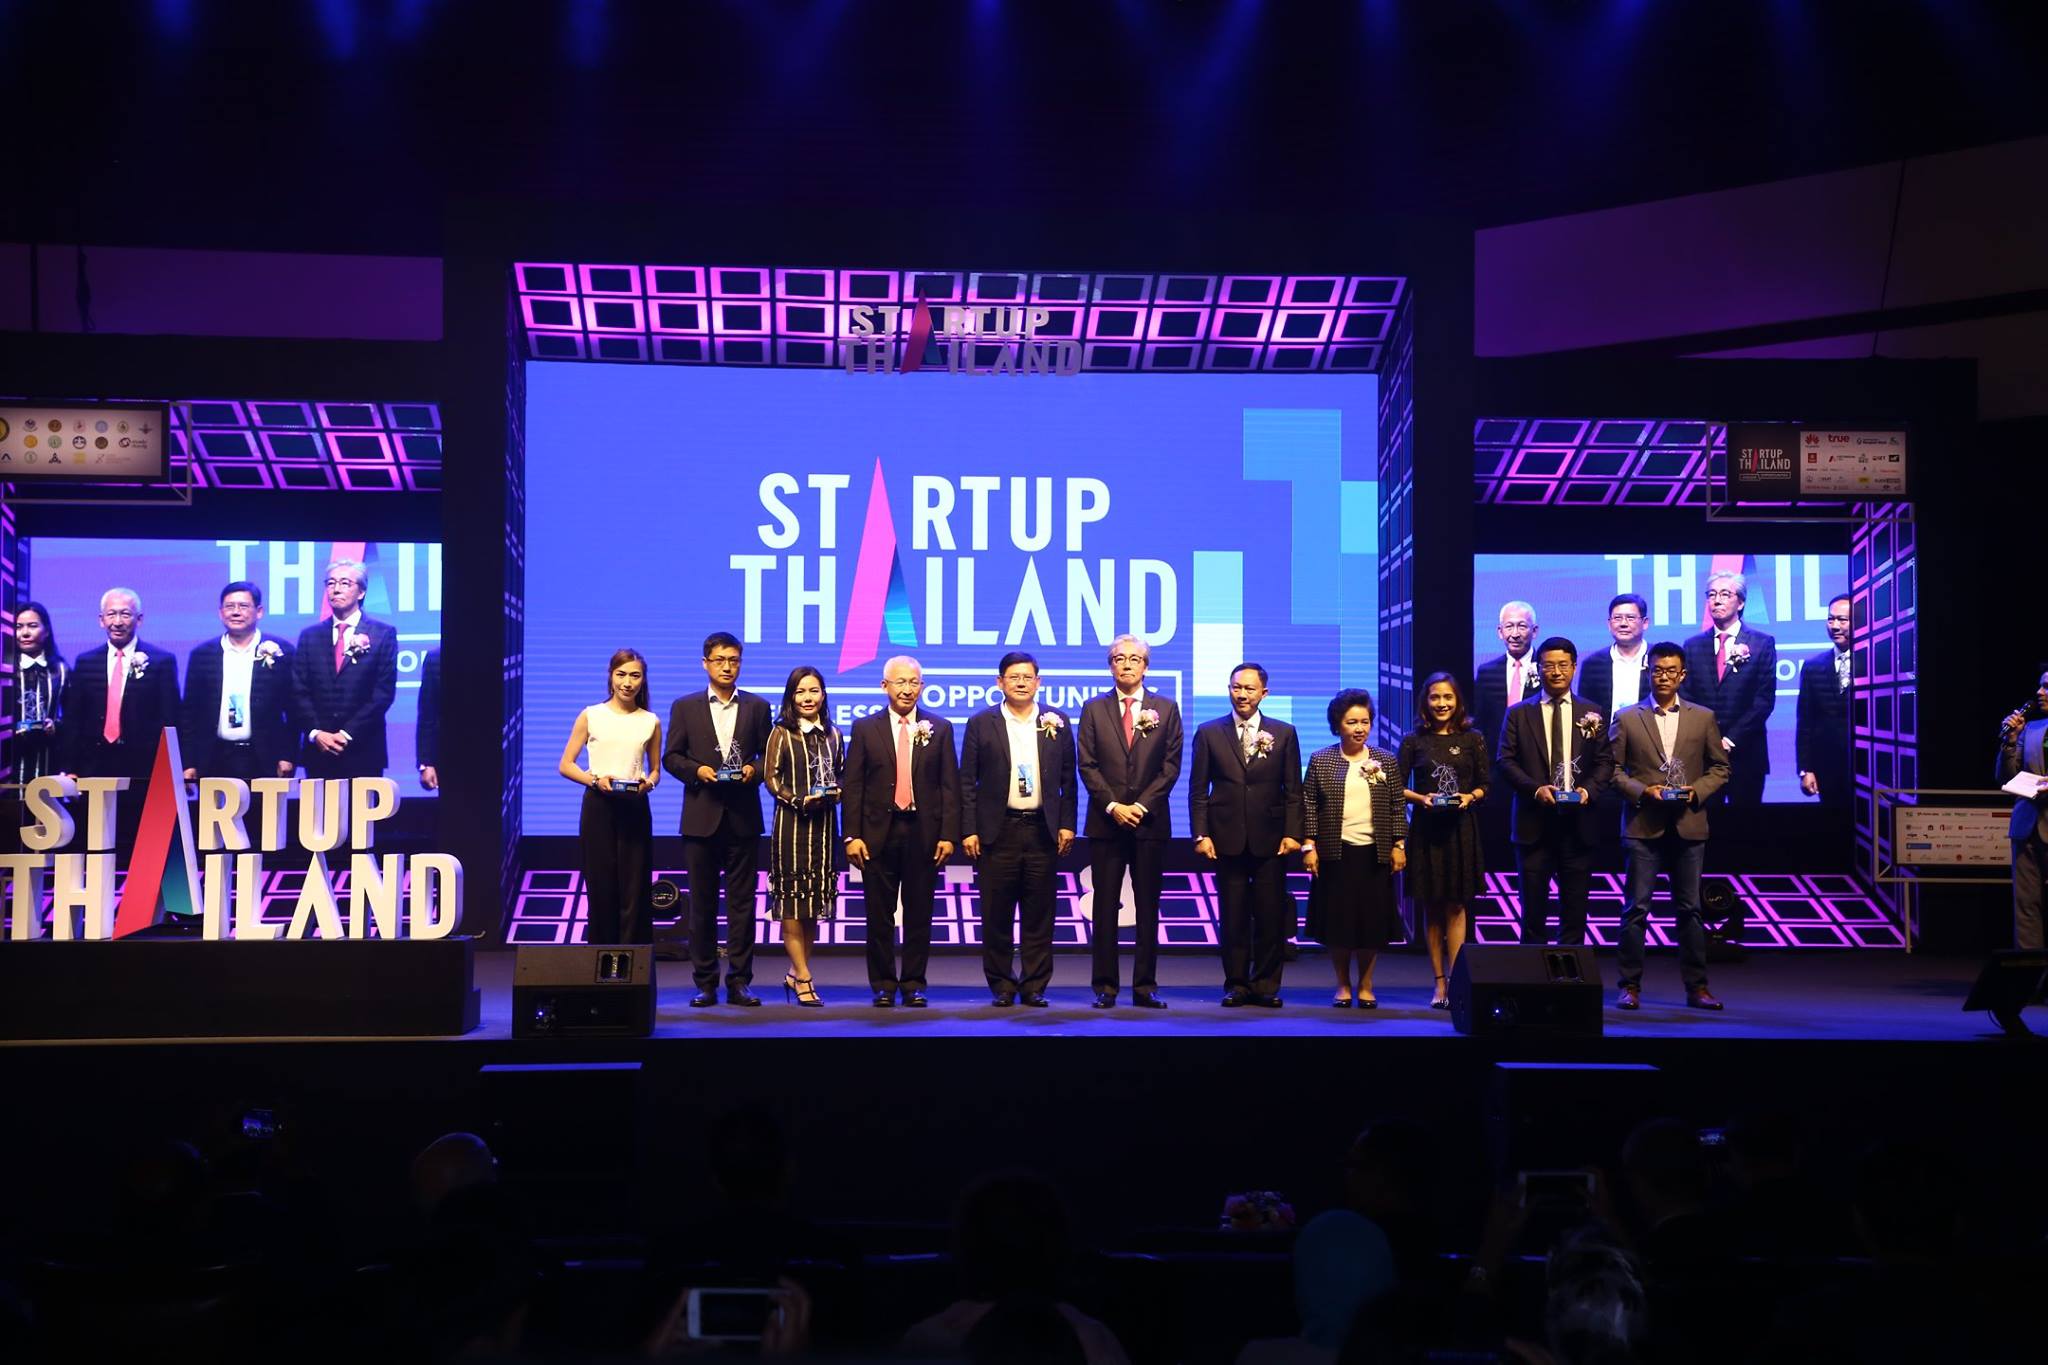 Startup Thailand Prime Minister Award